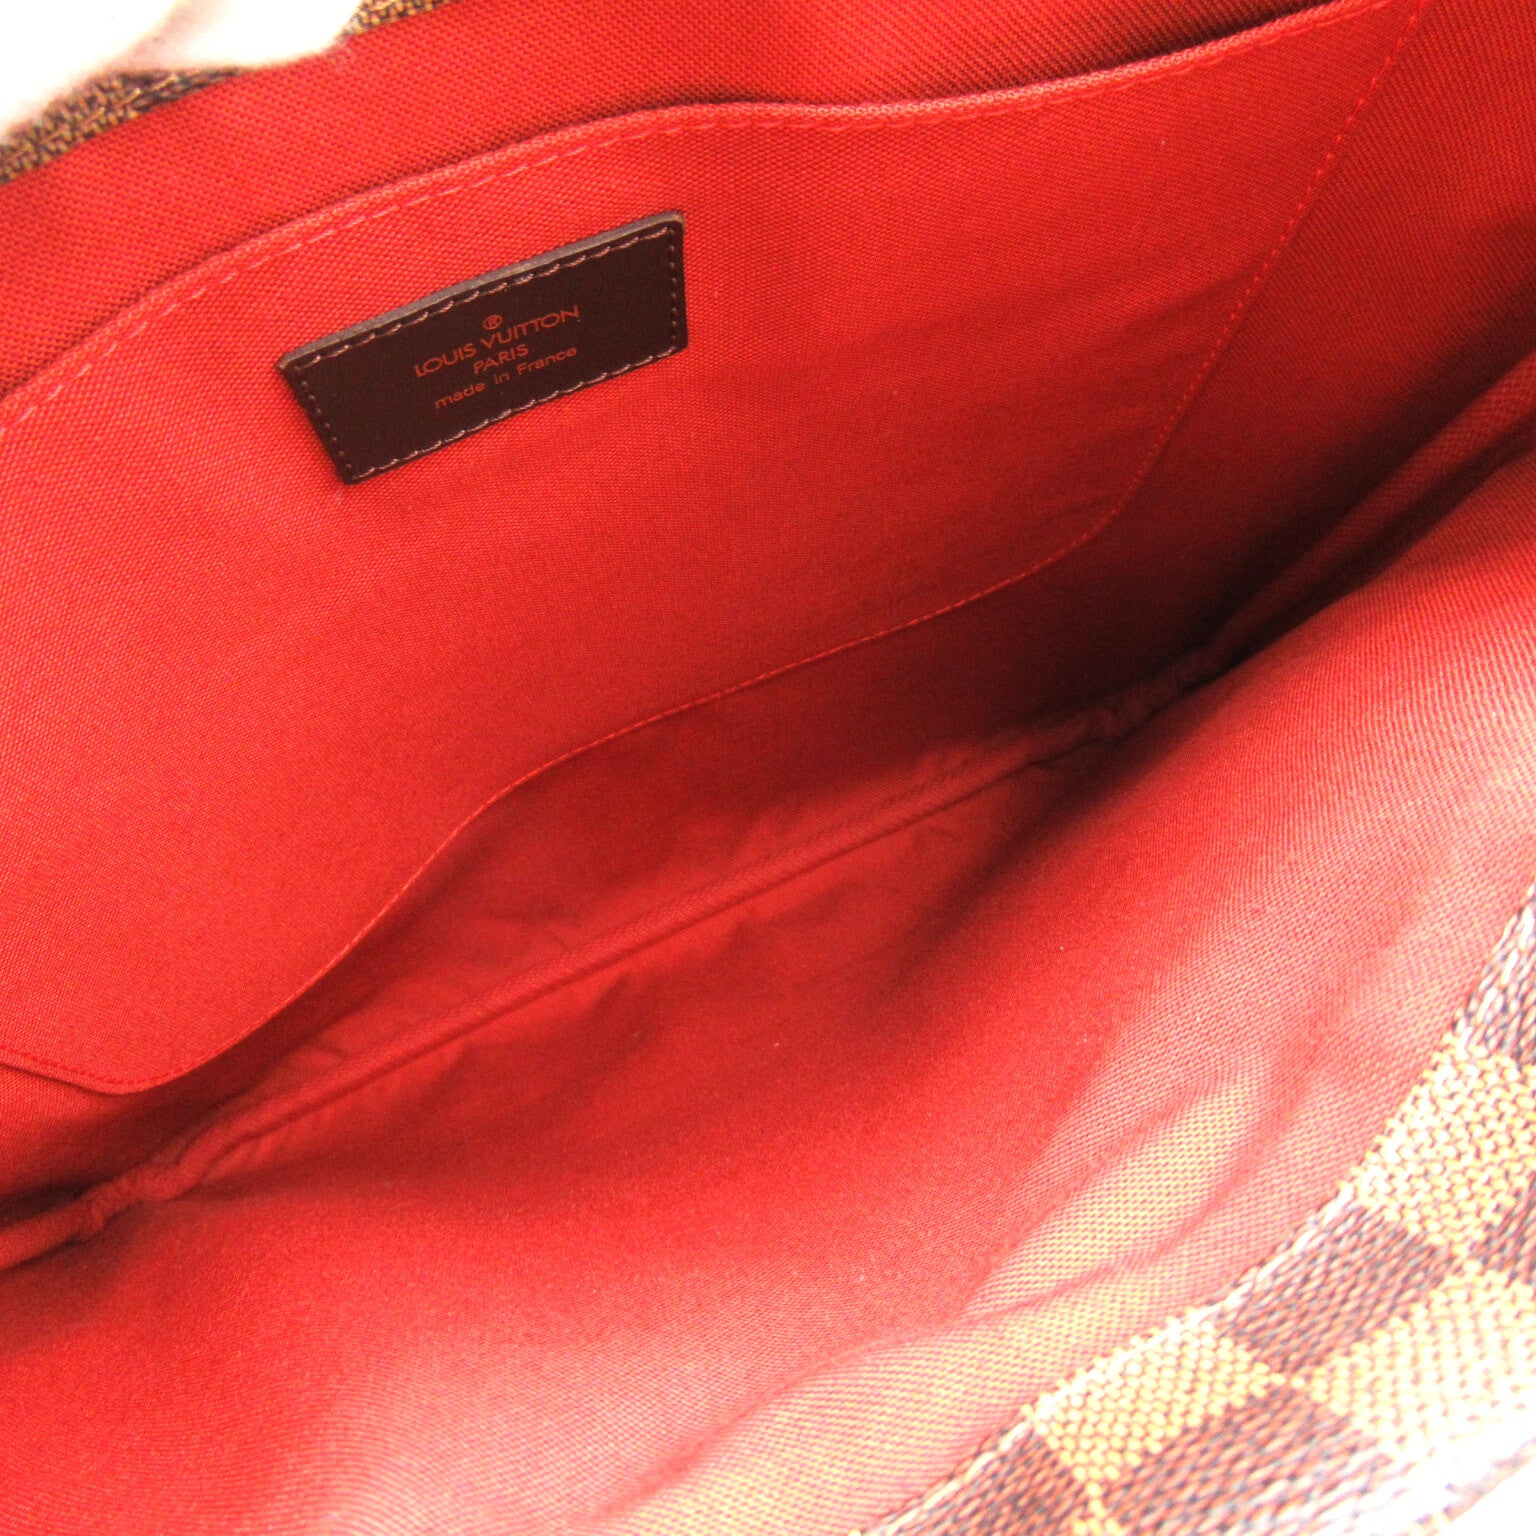 Louis Vuitton Louis Vuitton Clefton Tote Bag PVC Coated Linen Damier  Brown N51149